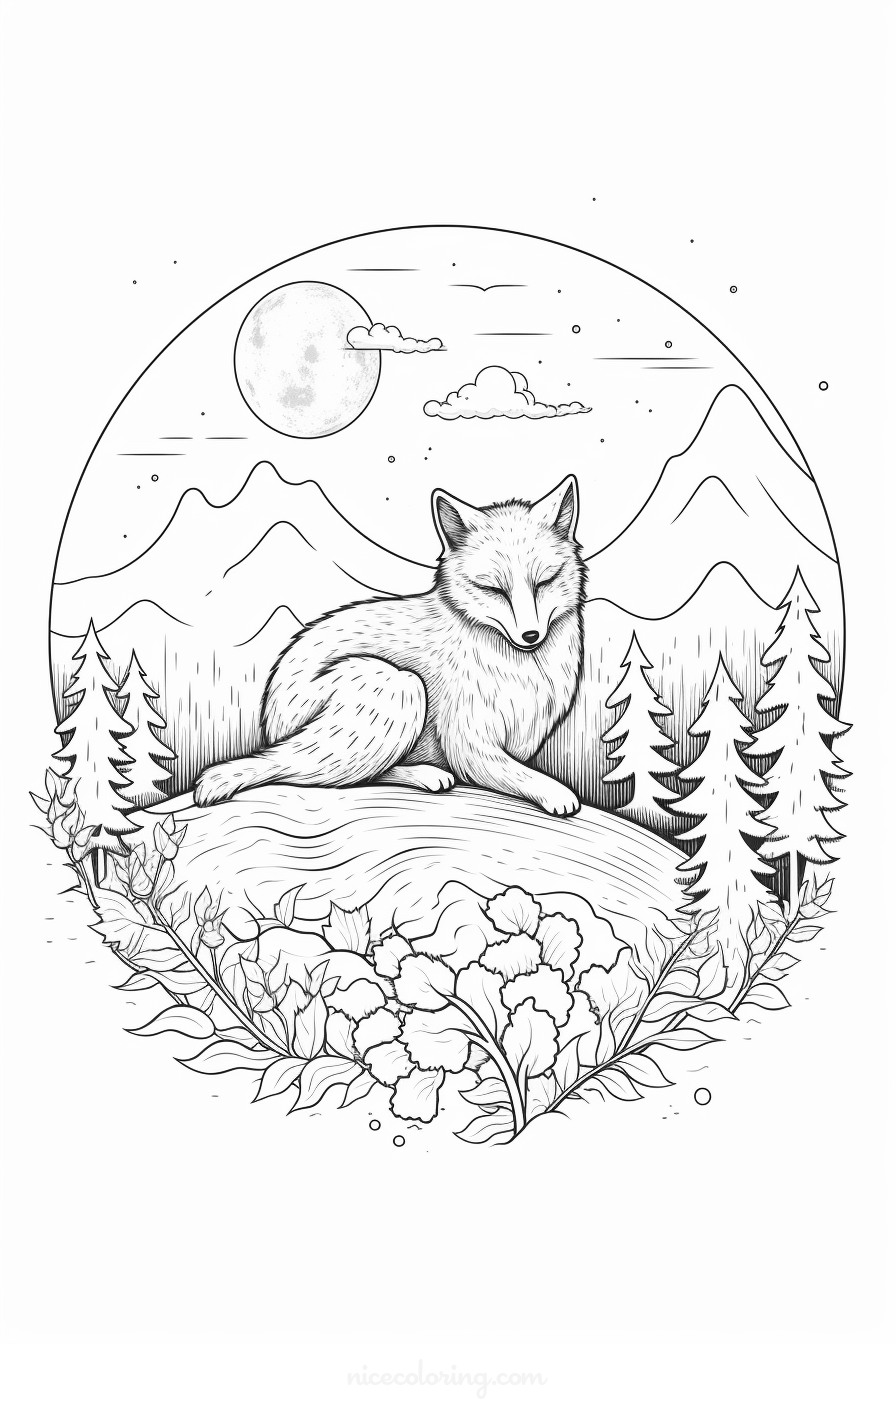 Uma página de colorir detalhada de um lobo em uma cena de floresta